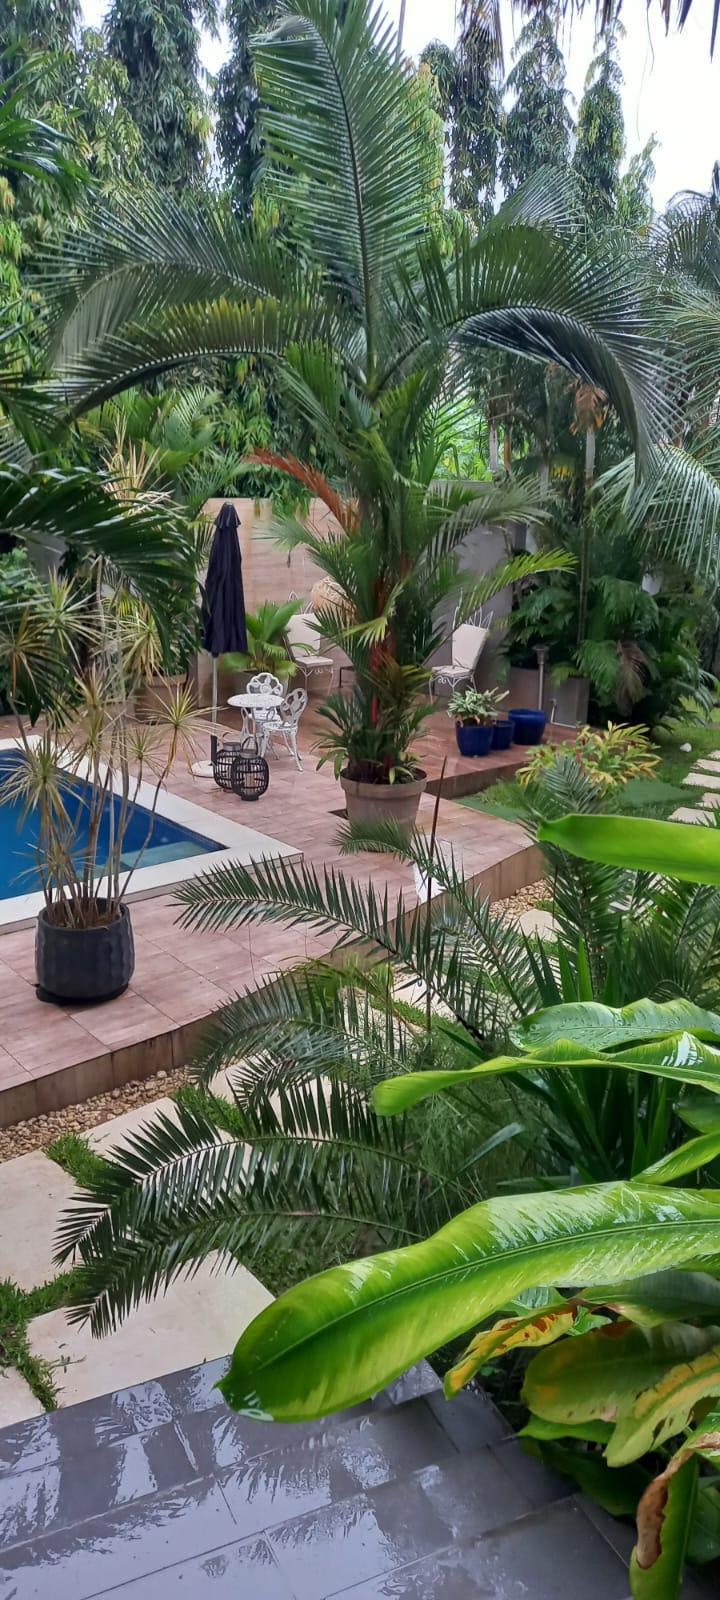 Vente d'une Maison / Villa de 10 pièce(s) à 575.000.000 FCFA : Abidjan-Cocody-Angré (Chu)